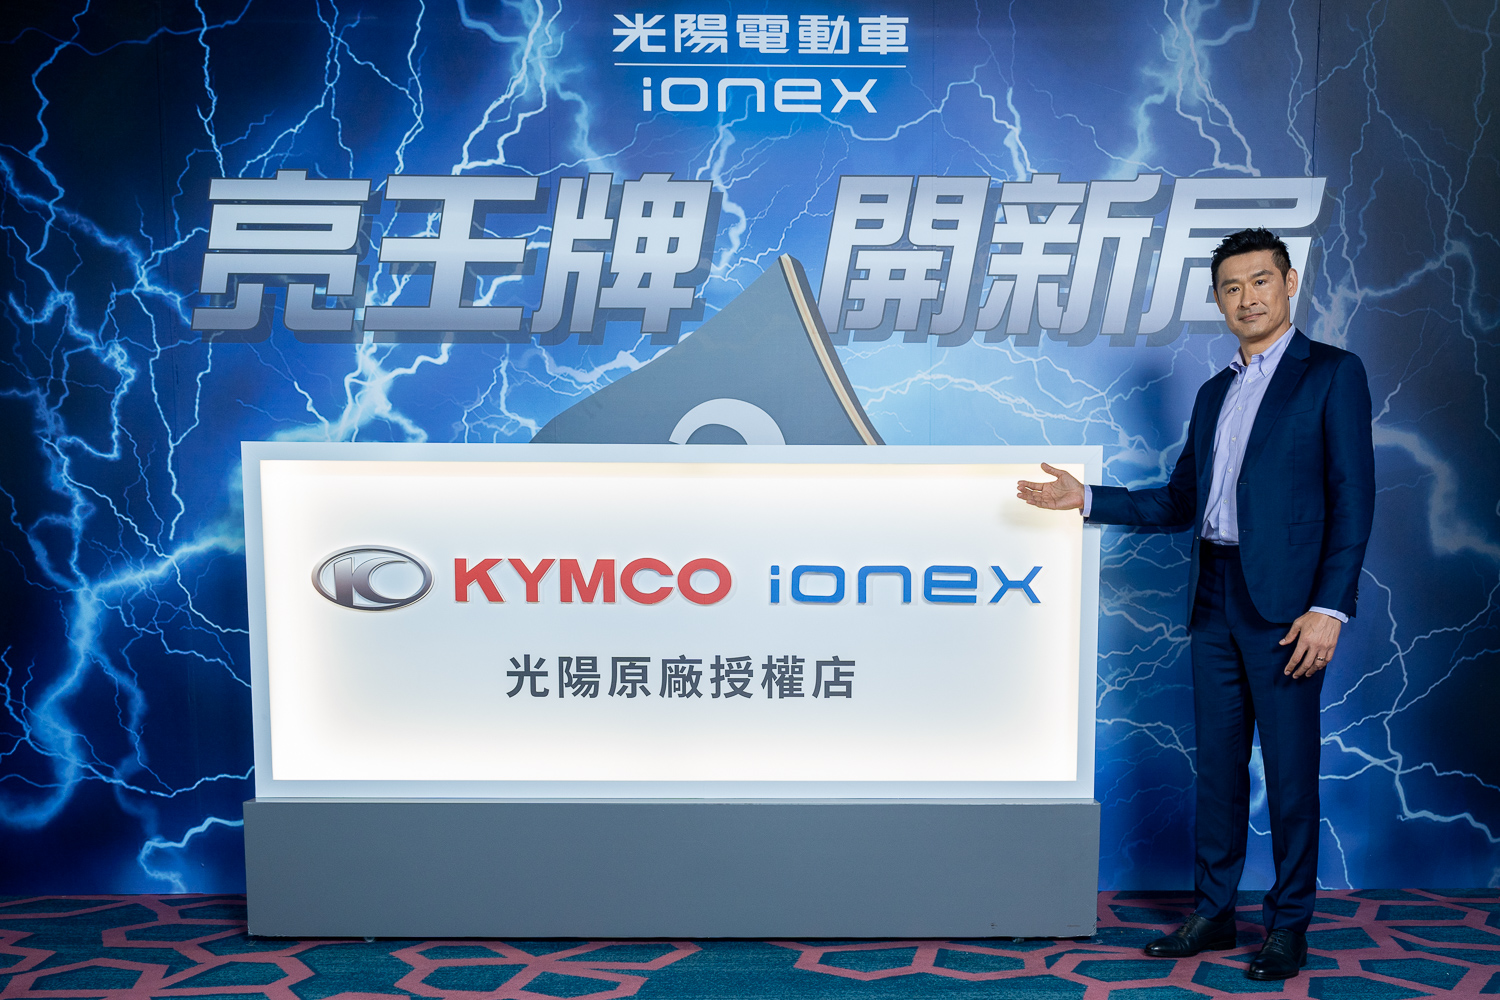 KYMCO「油電合一」開創全新格局  強勢佈局油電雙料冠軍！Ionex 第2,600座換電站插旗合歡山  「全台最強」最密電網超前達標